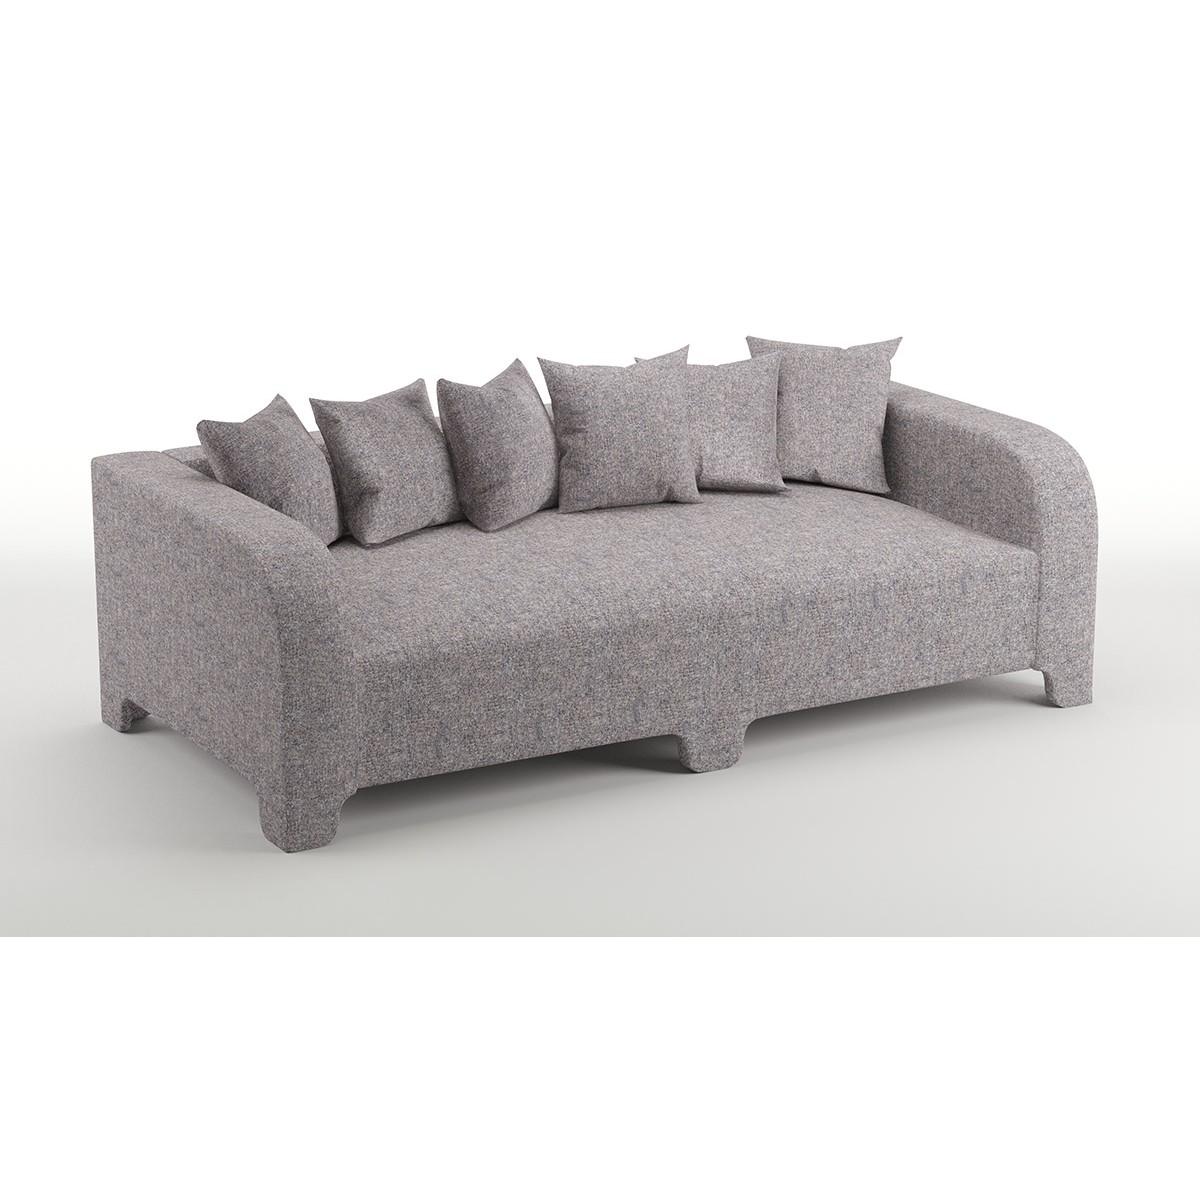 Popus Editions Graziella 2 Seater Sofa in Marine London Linen Fabric For Sale